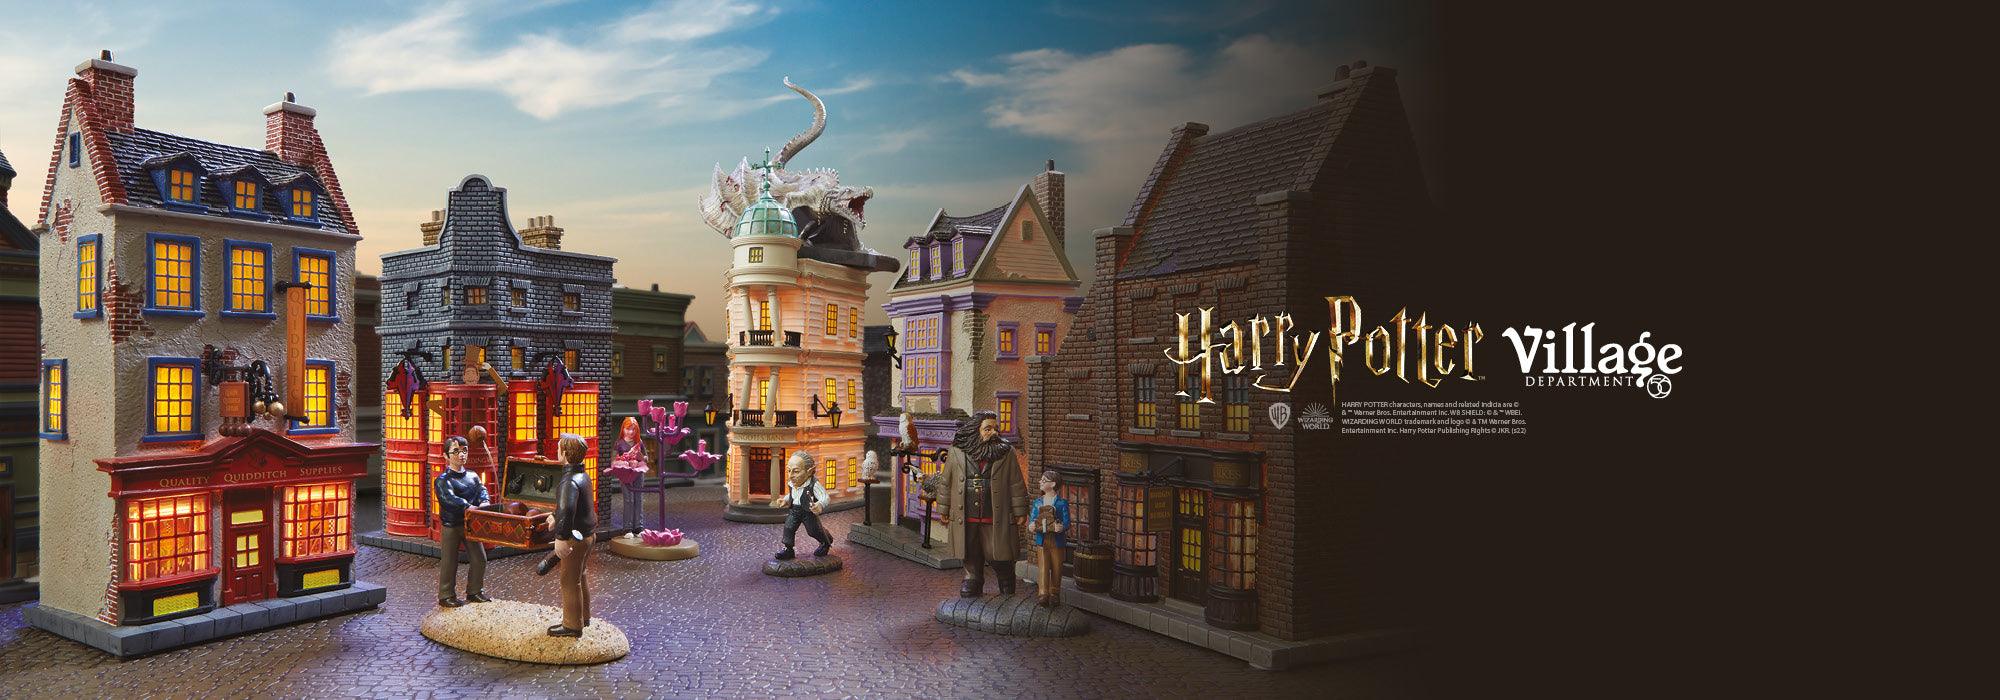 Harry Potter™ Weasleys' Wizard Wheezes Ornament - Keepsake